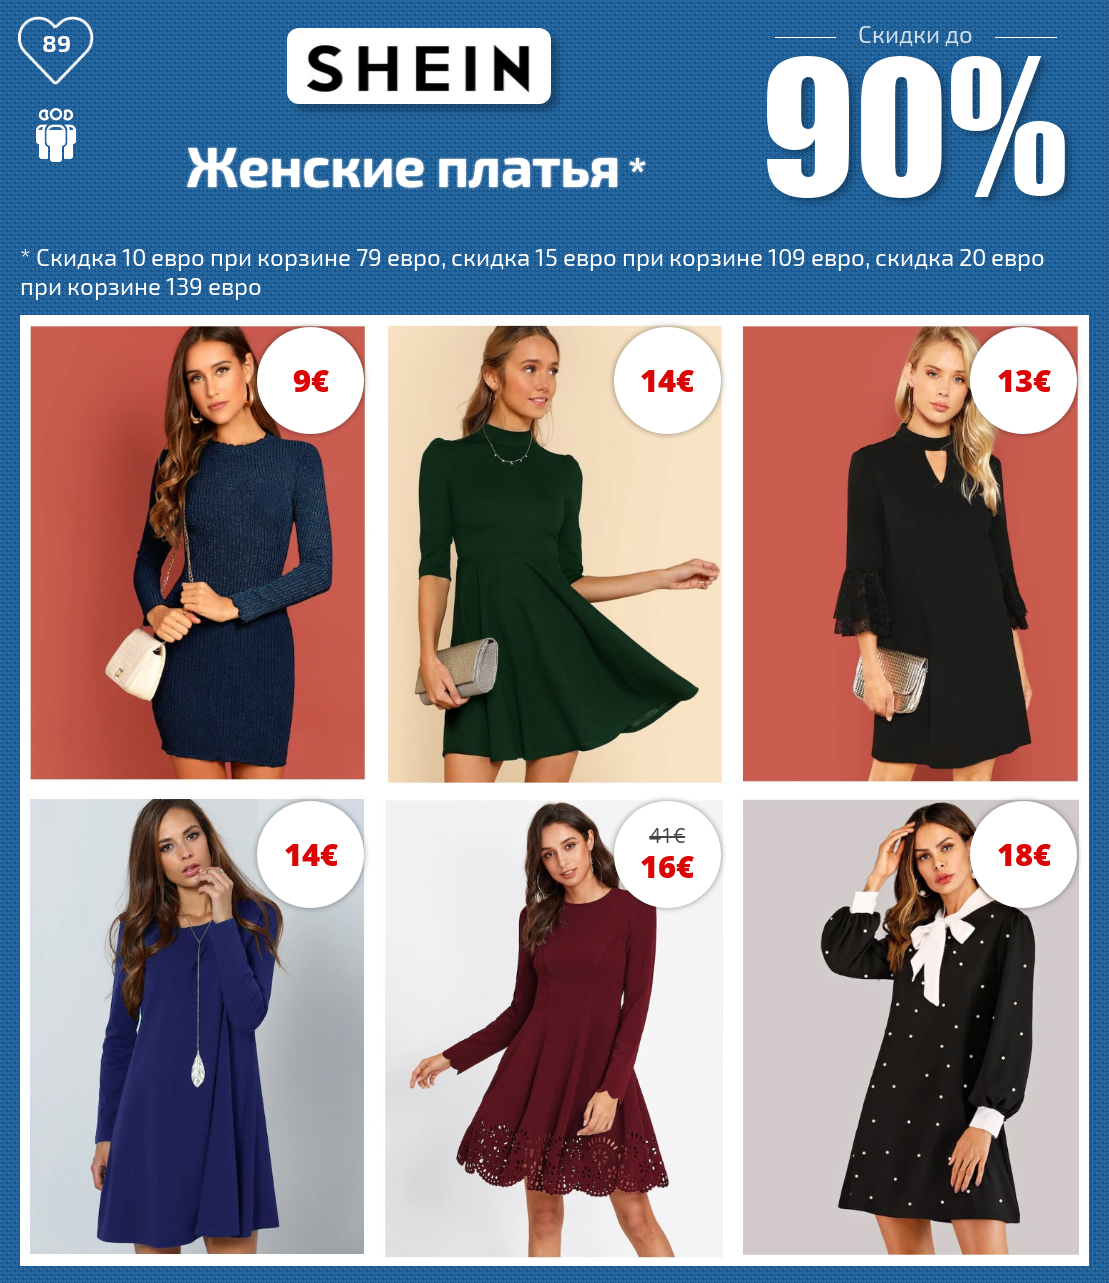 Shein - интернет-магазин модной одежды на русском языке